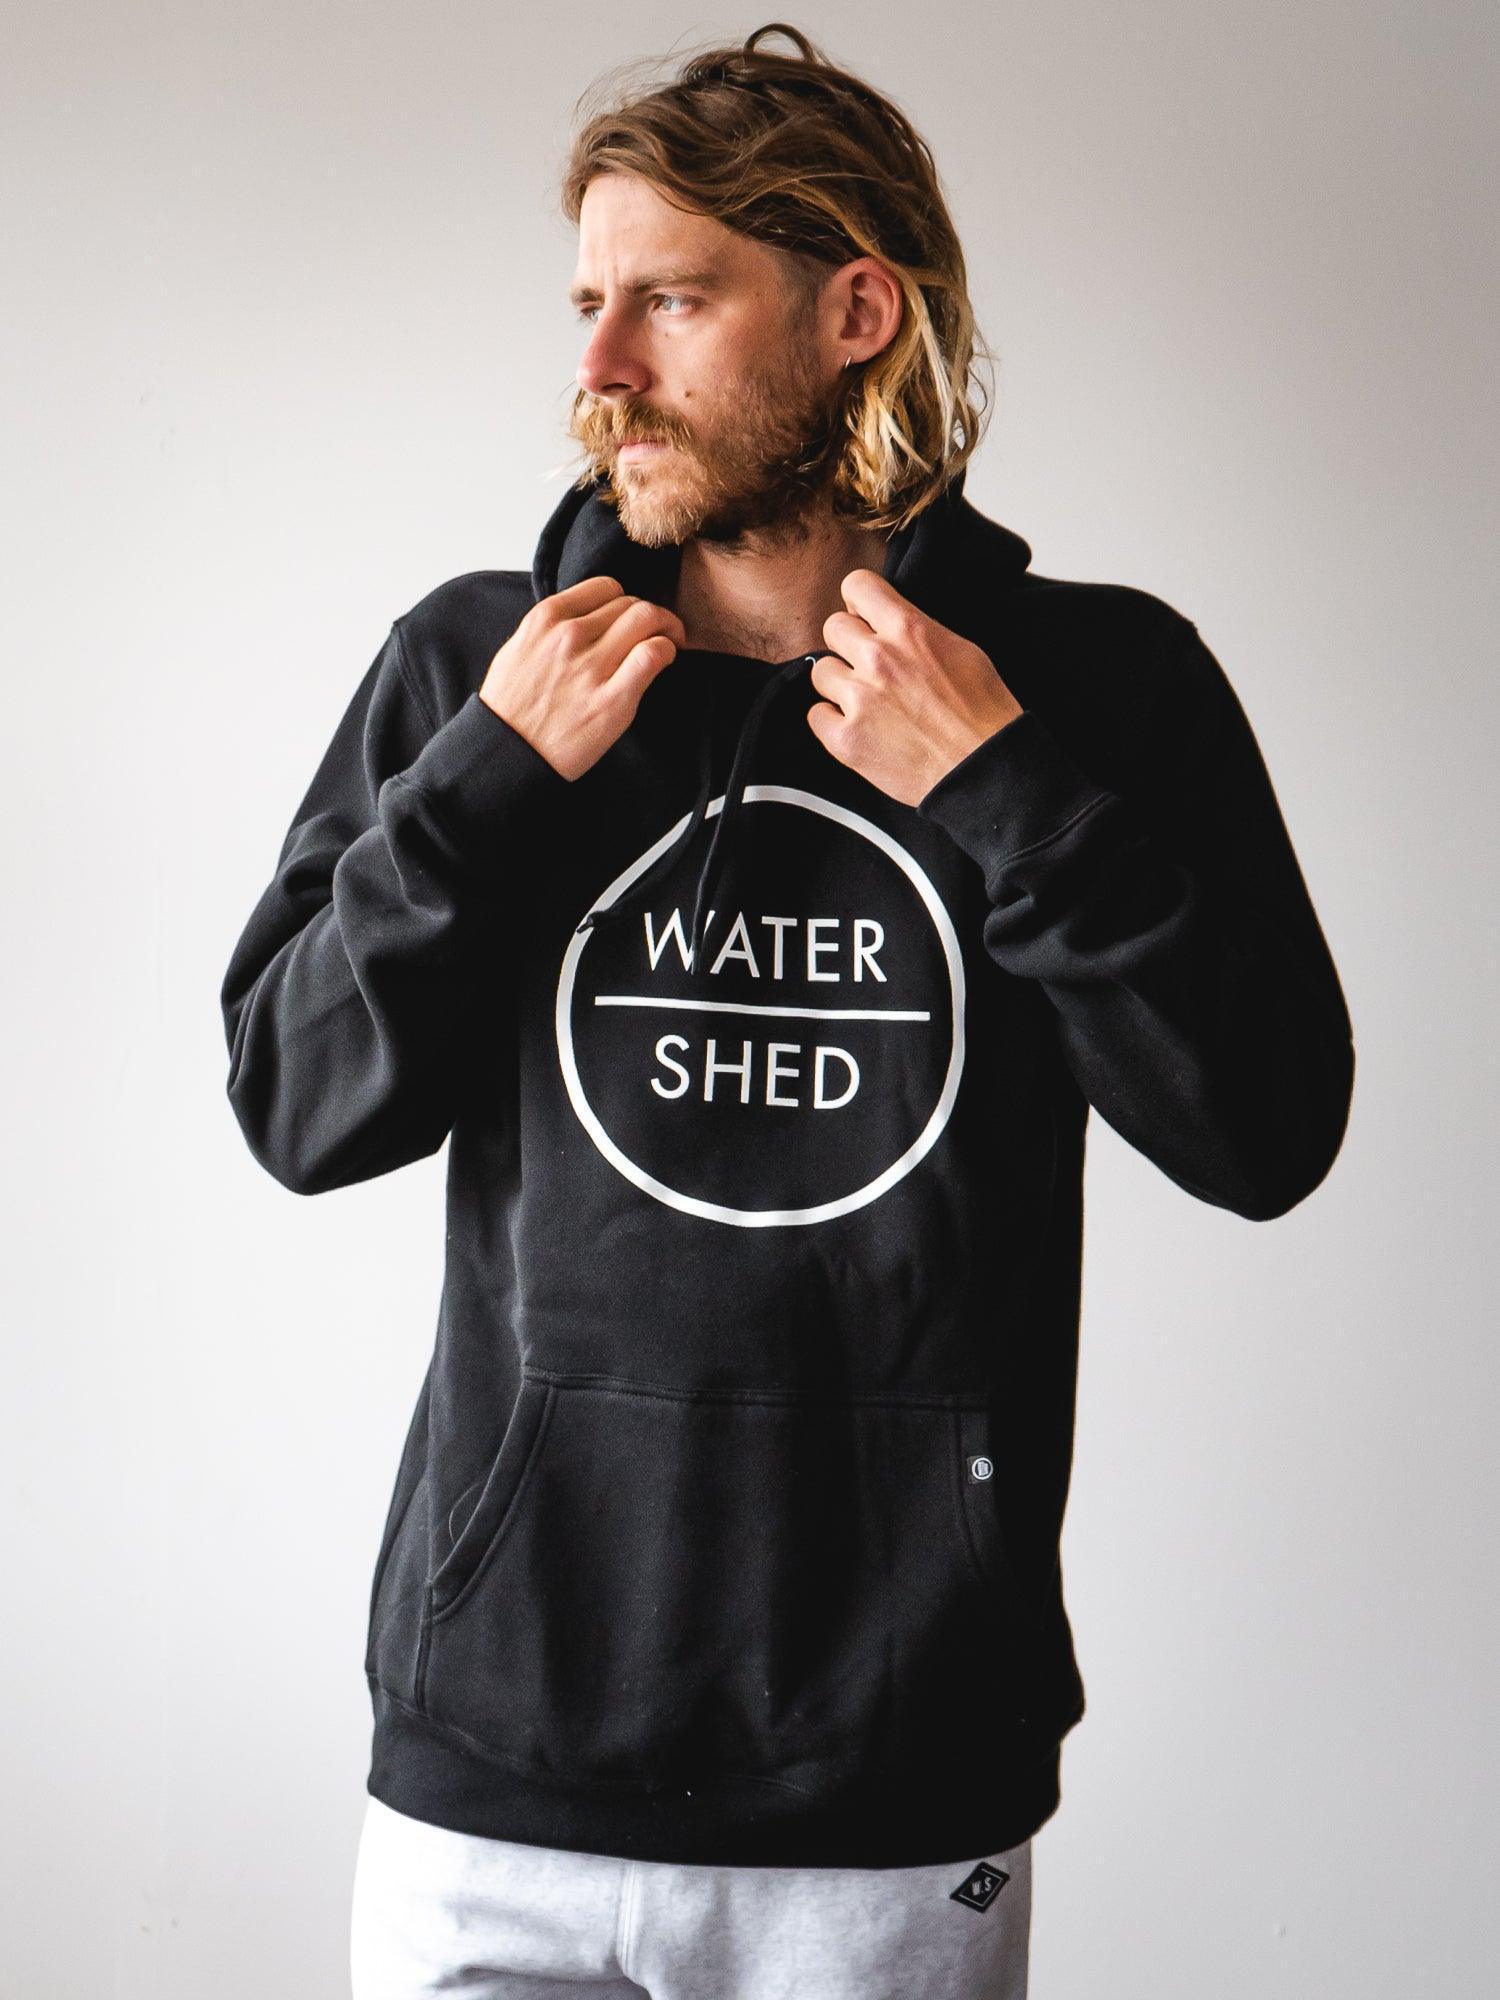 watershed classic logo hoody black - surf hoody - mens pullover hoody black 